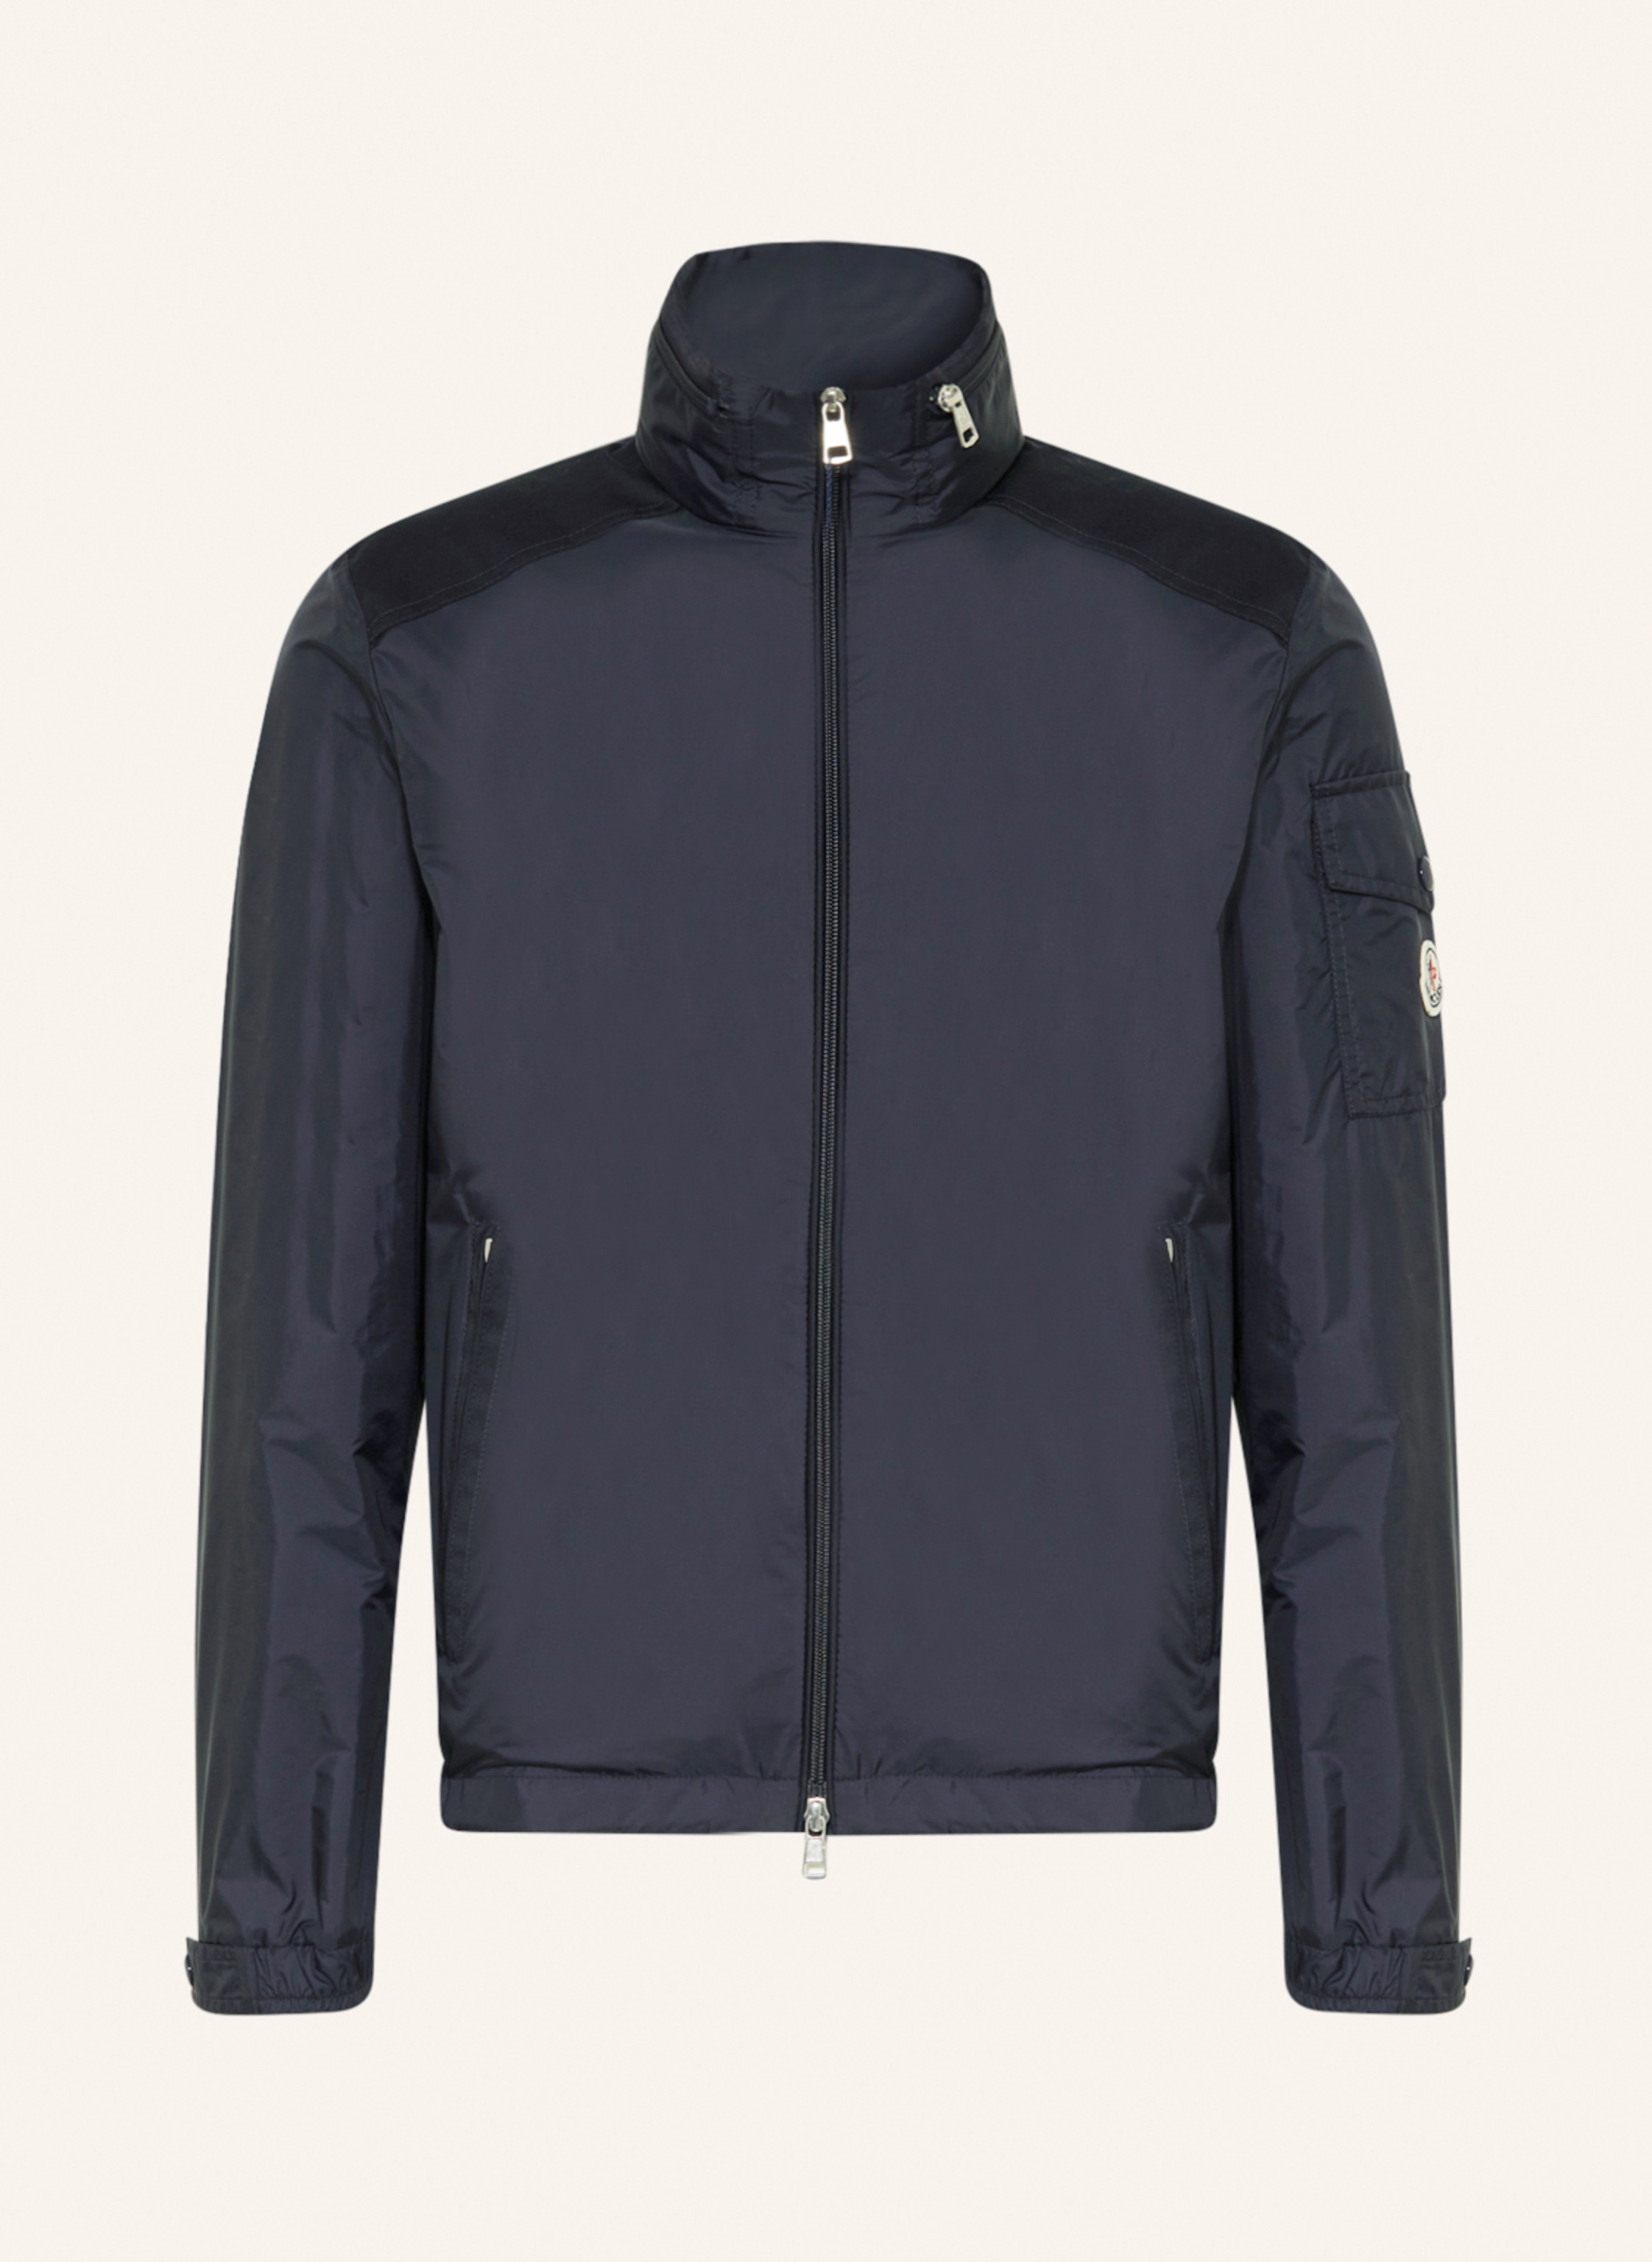 MONCLER Jacket JUMEAUX in dark blue | Breuninger